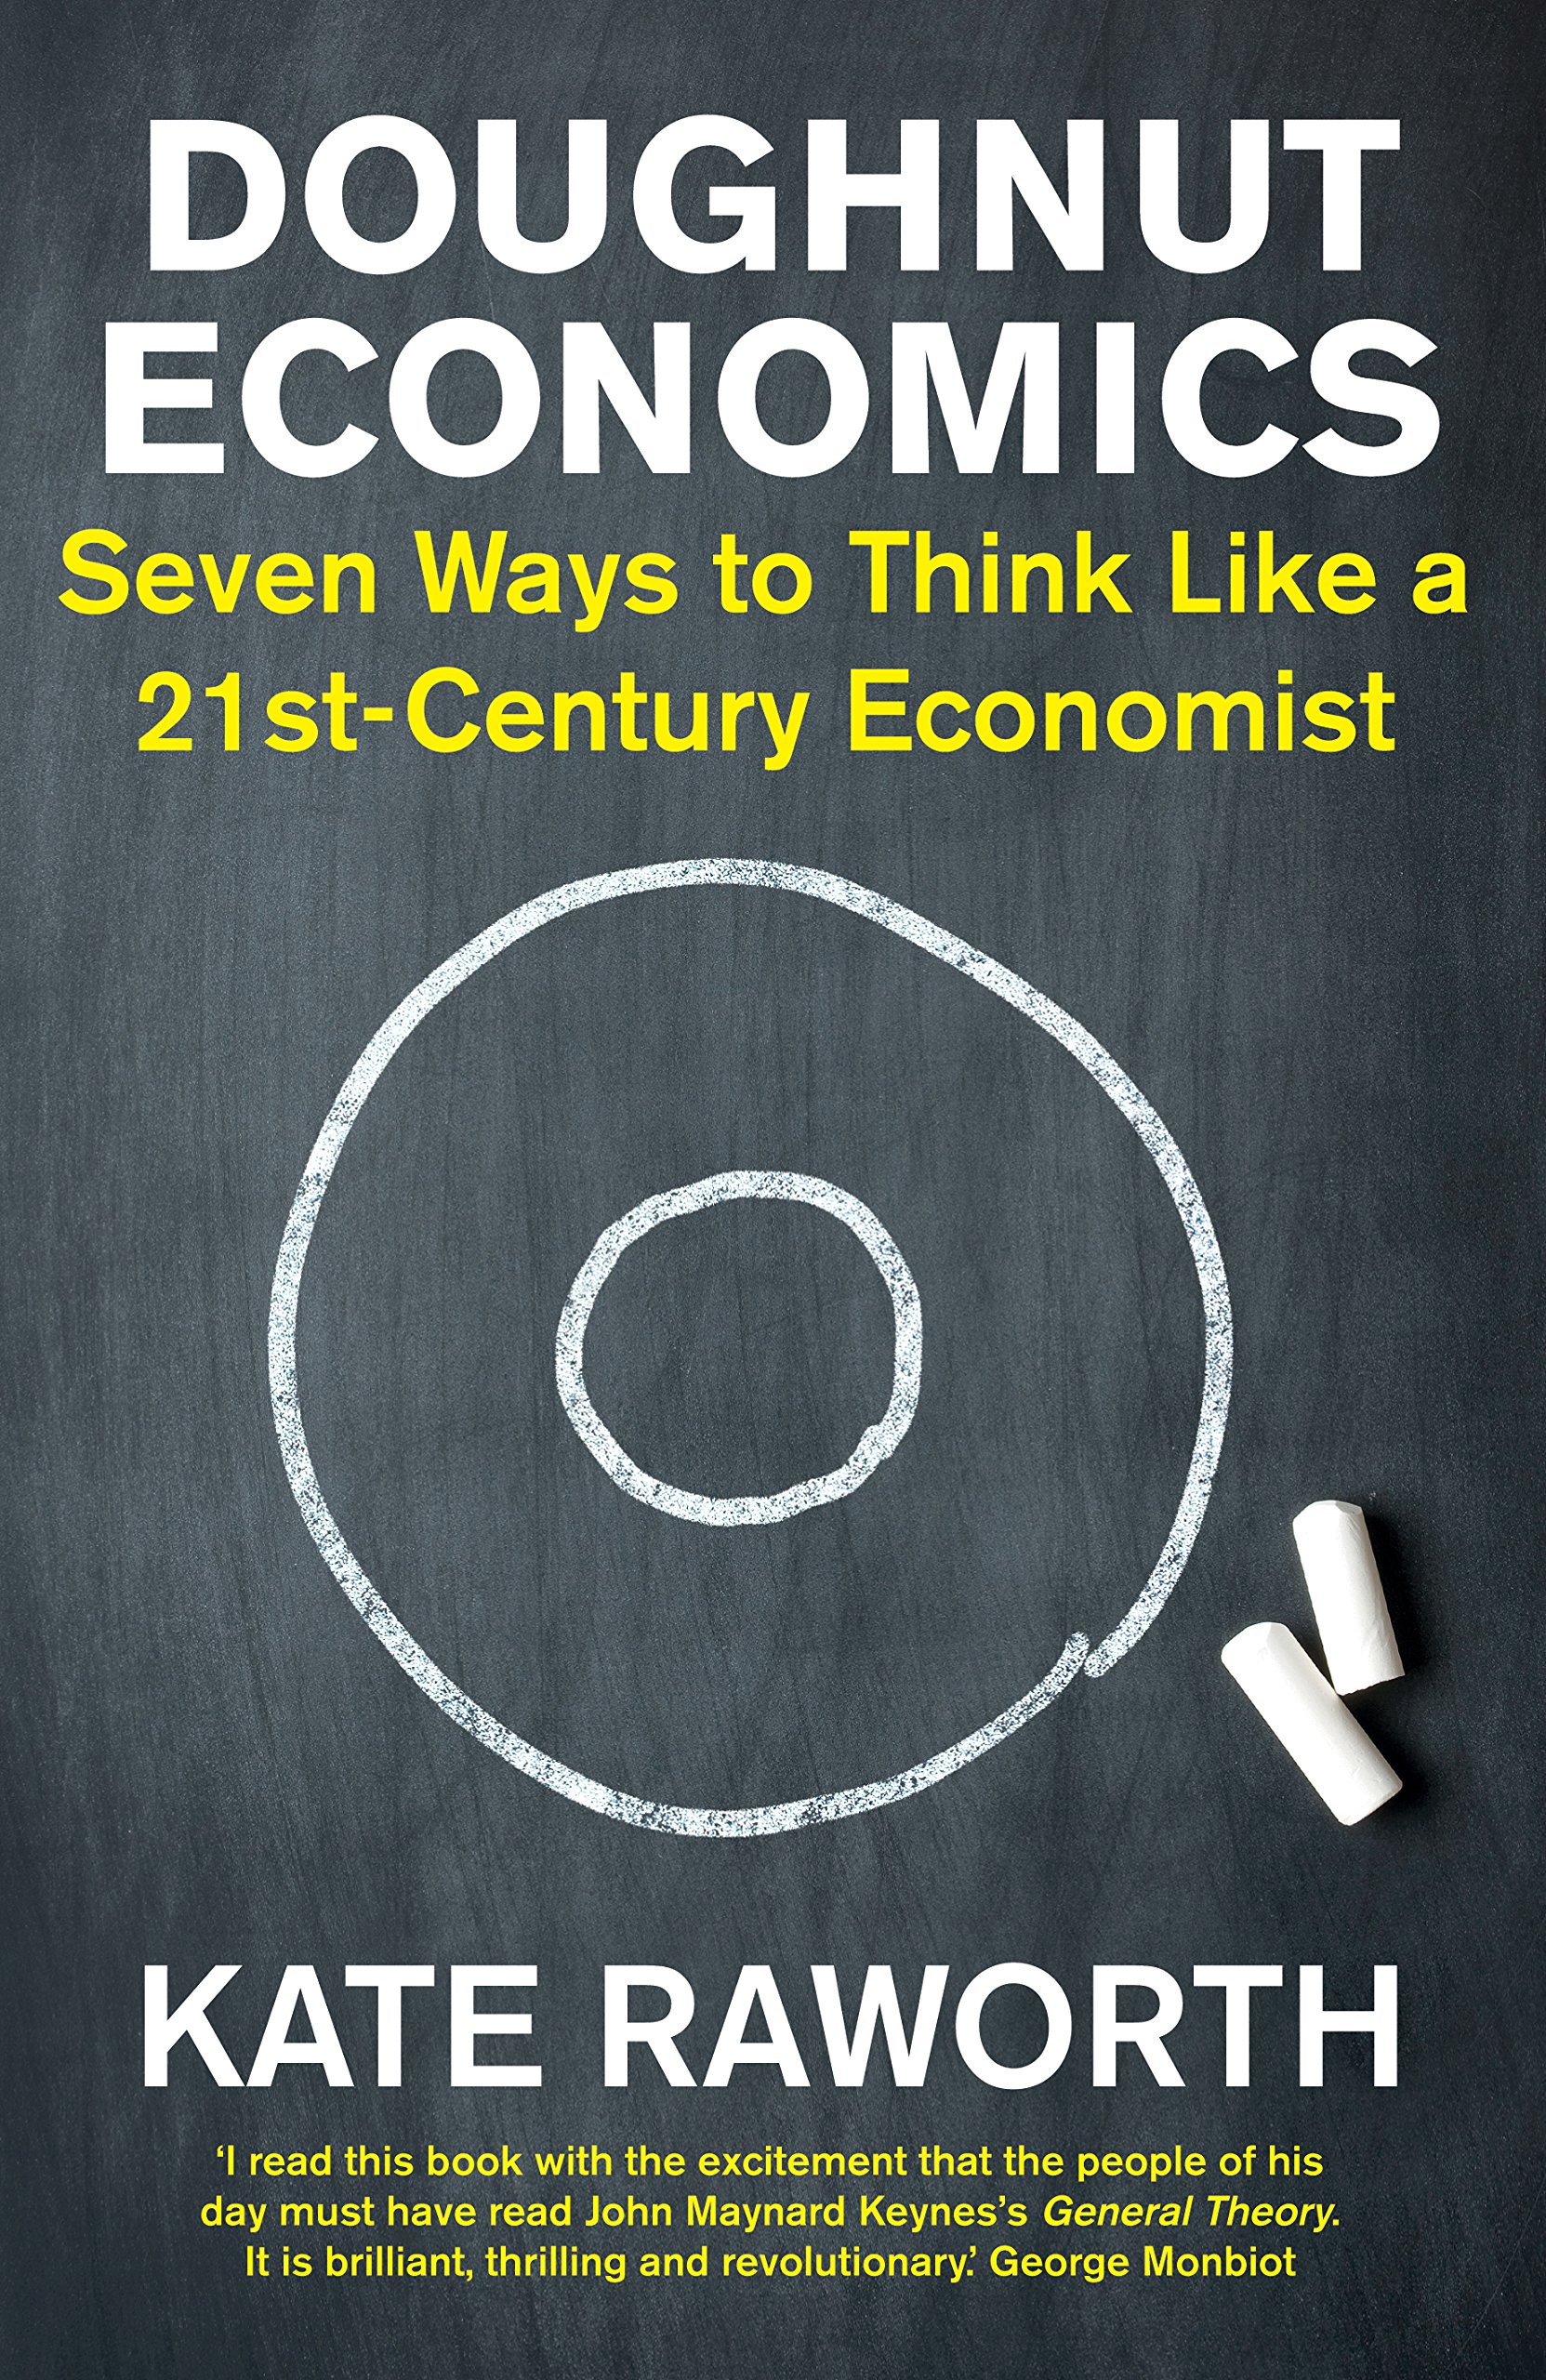 Book Review: Doughnut Economics